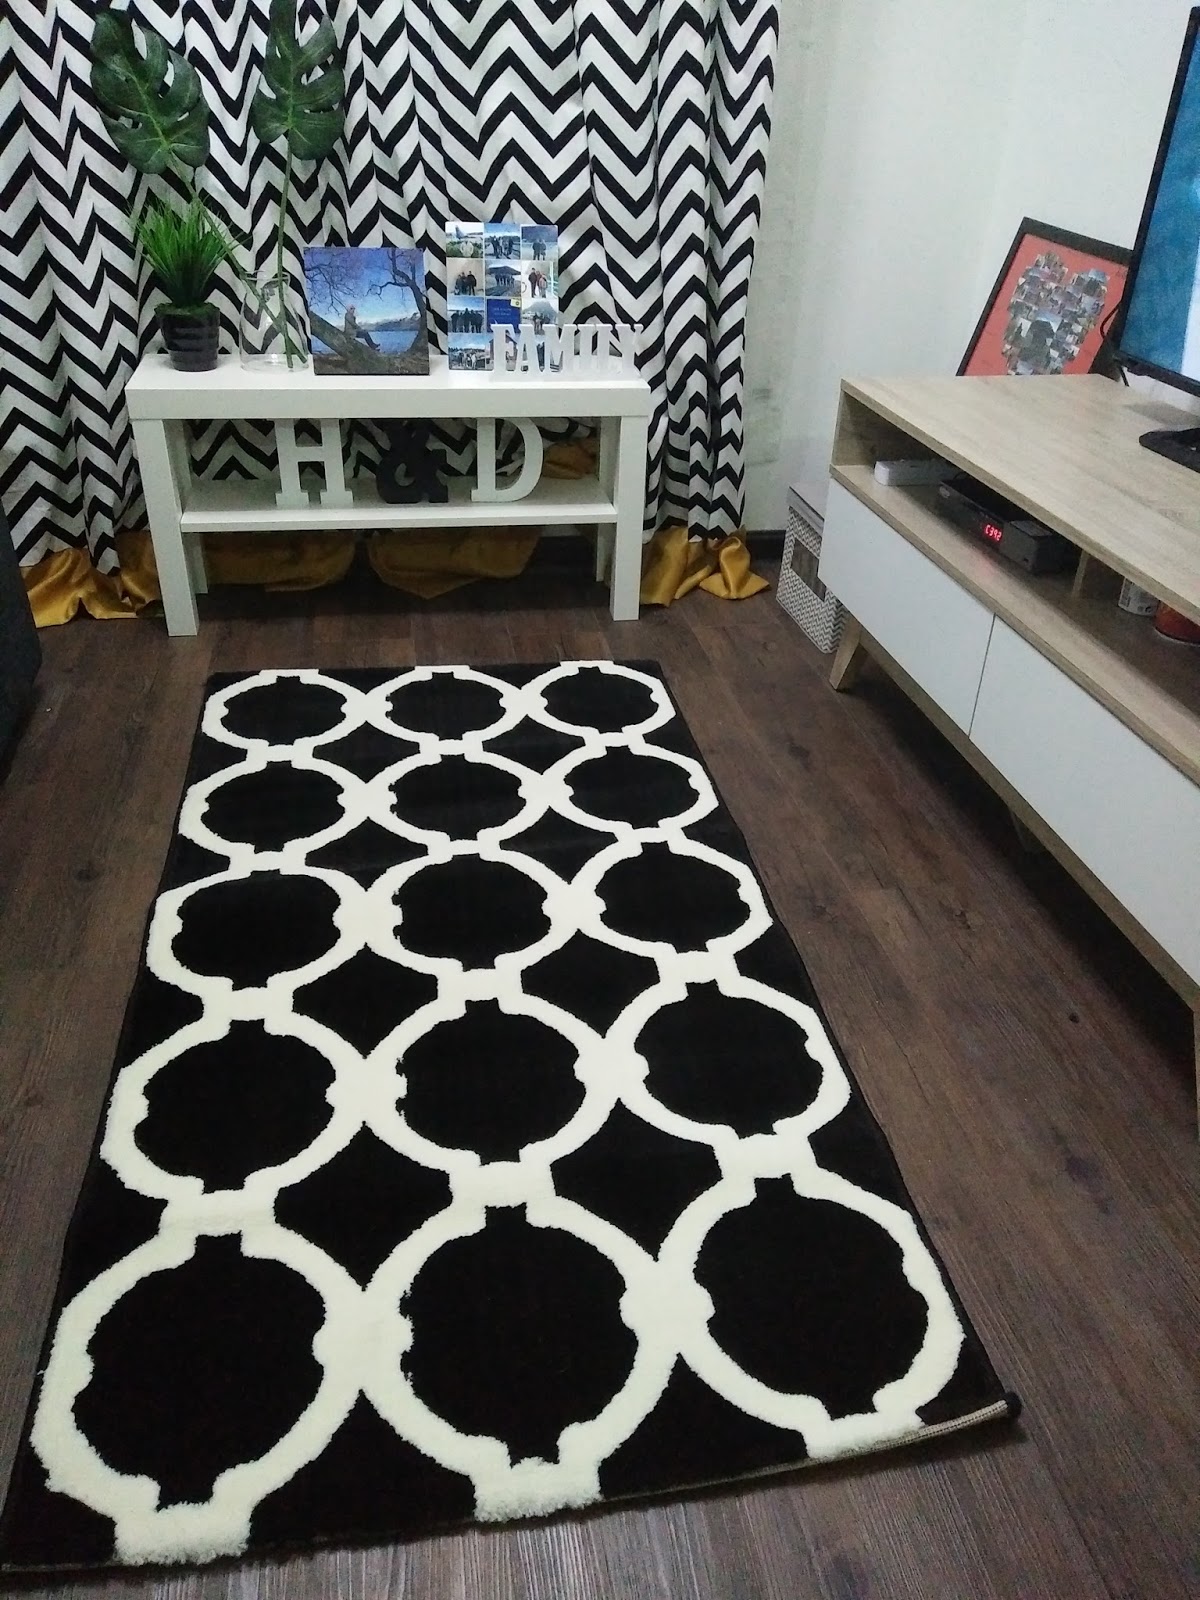 Hobi Beli Carpet Atau Giler Carpet Diana Dy